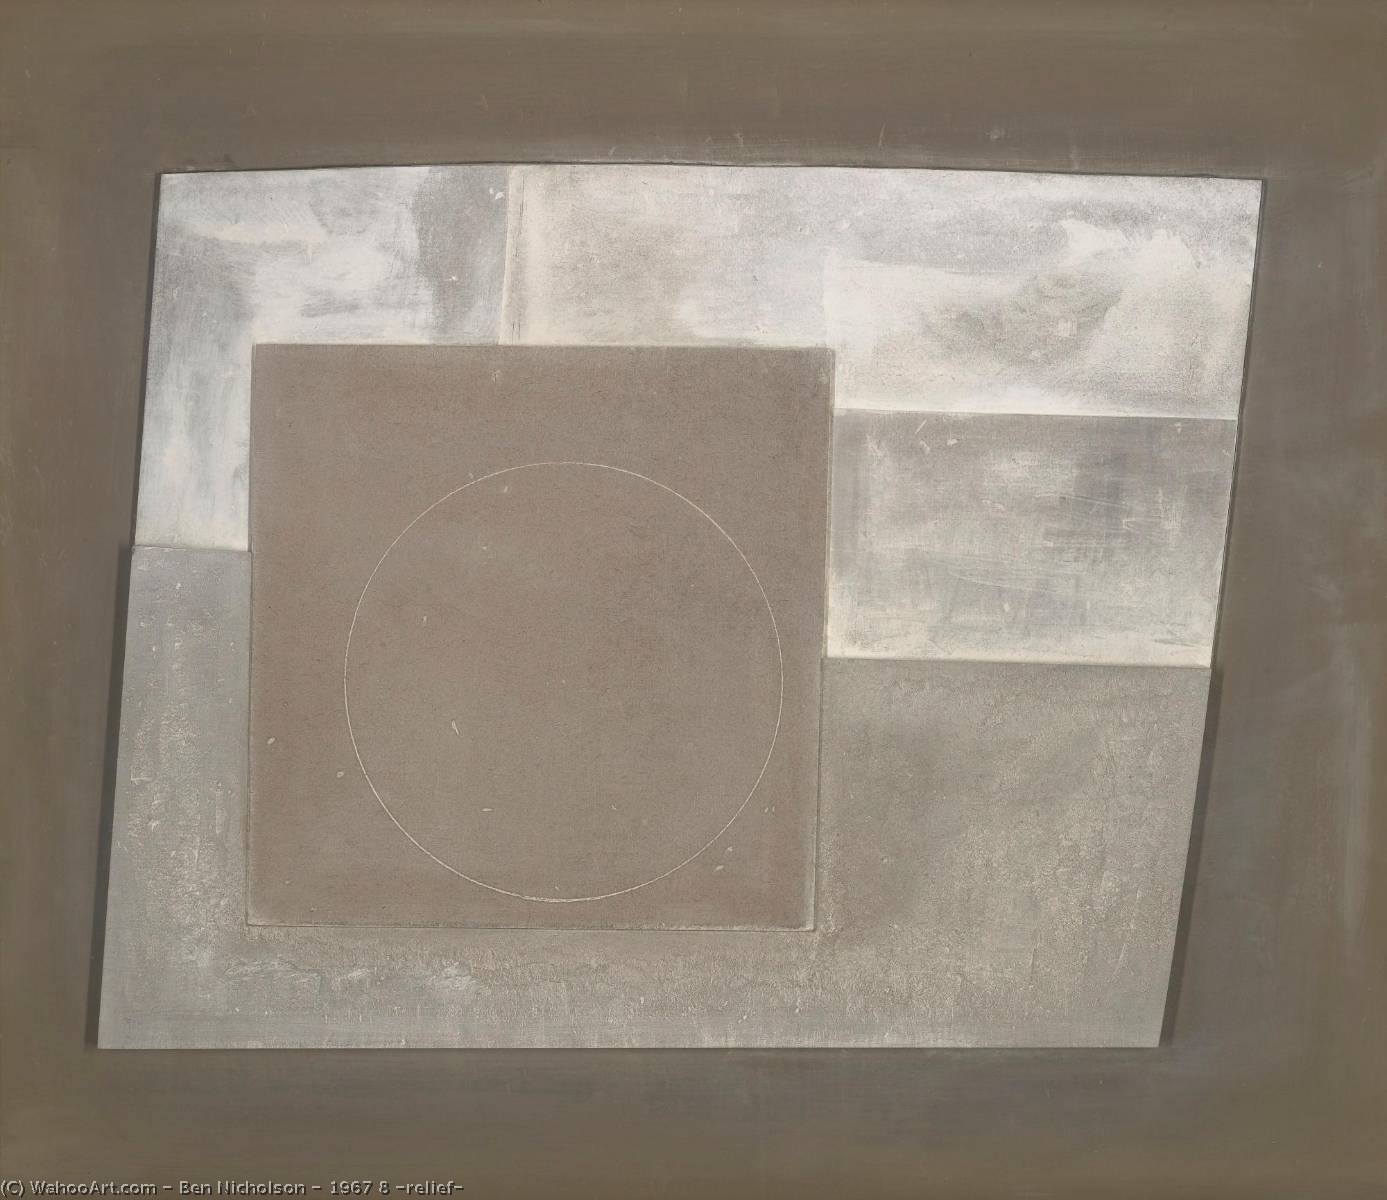 WikiOO.org - Εγκυκλοπαίδεια Καλών Τεχνών - Ζωγραφική, έργα τέχνης Ben Nicholson - 1967 8 (relief)